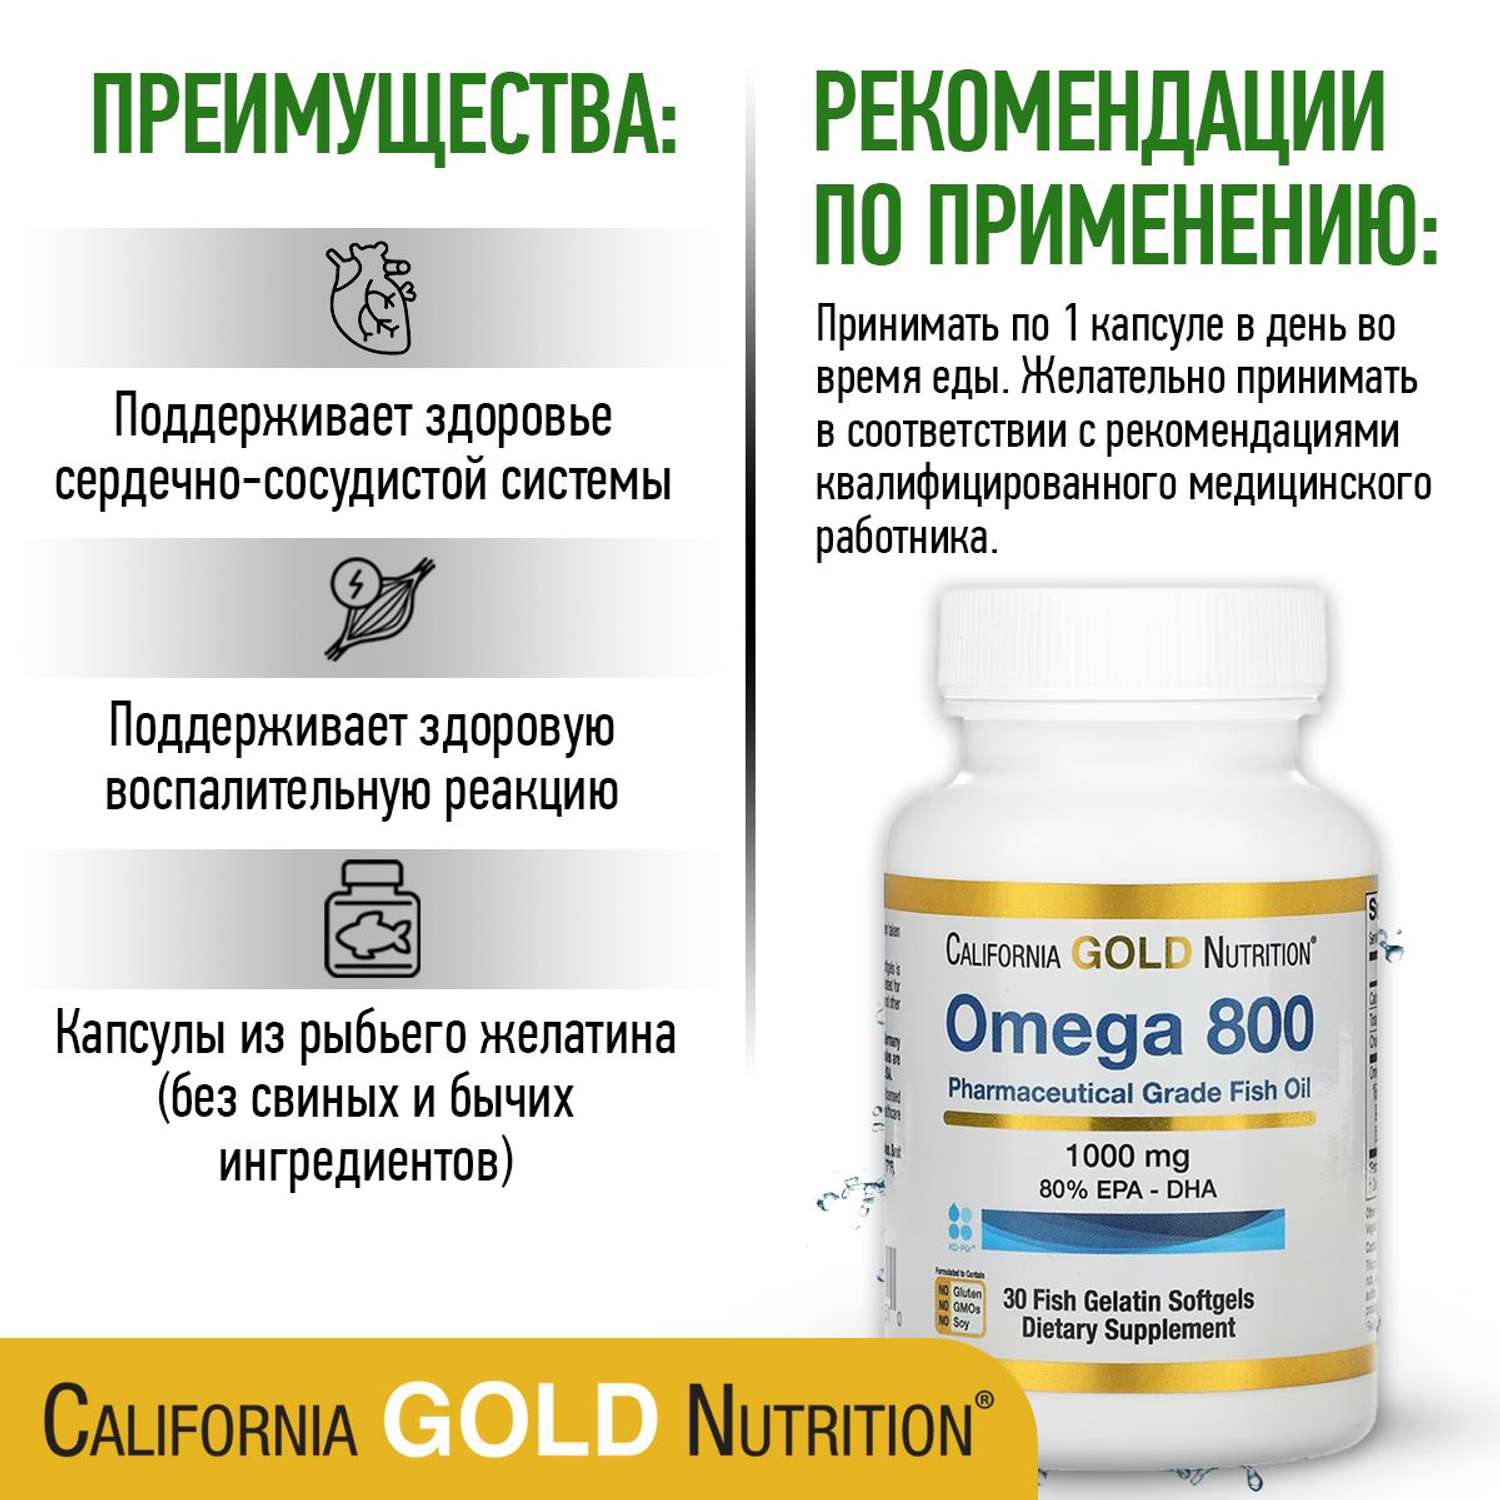 Омега 3 California Gold Nutrition 800 1000mg EPA-DHA 30 капсул - фото 2